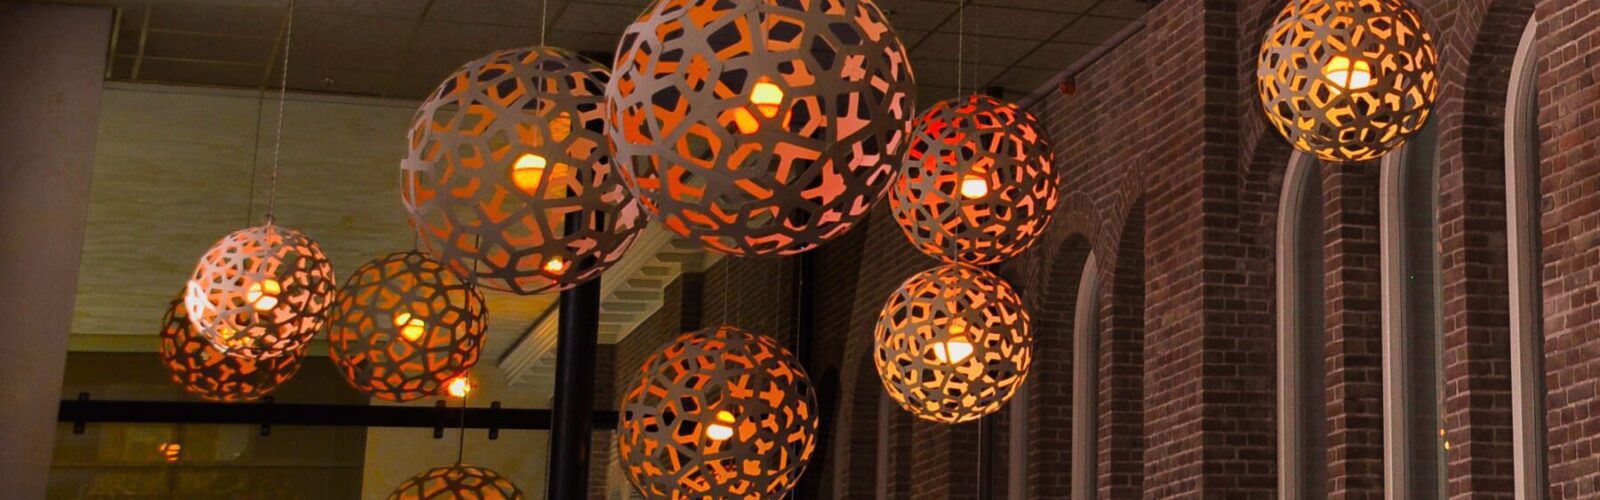 De LED-lichtbol van DYDELL verwerkt in het plafond van artiestenfoyer Philharmonie in Haarlem